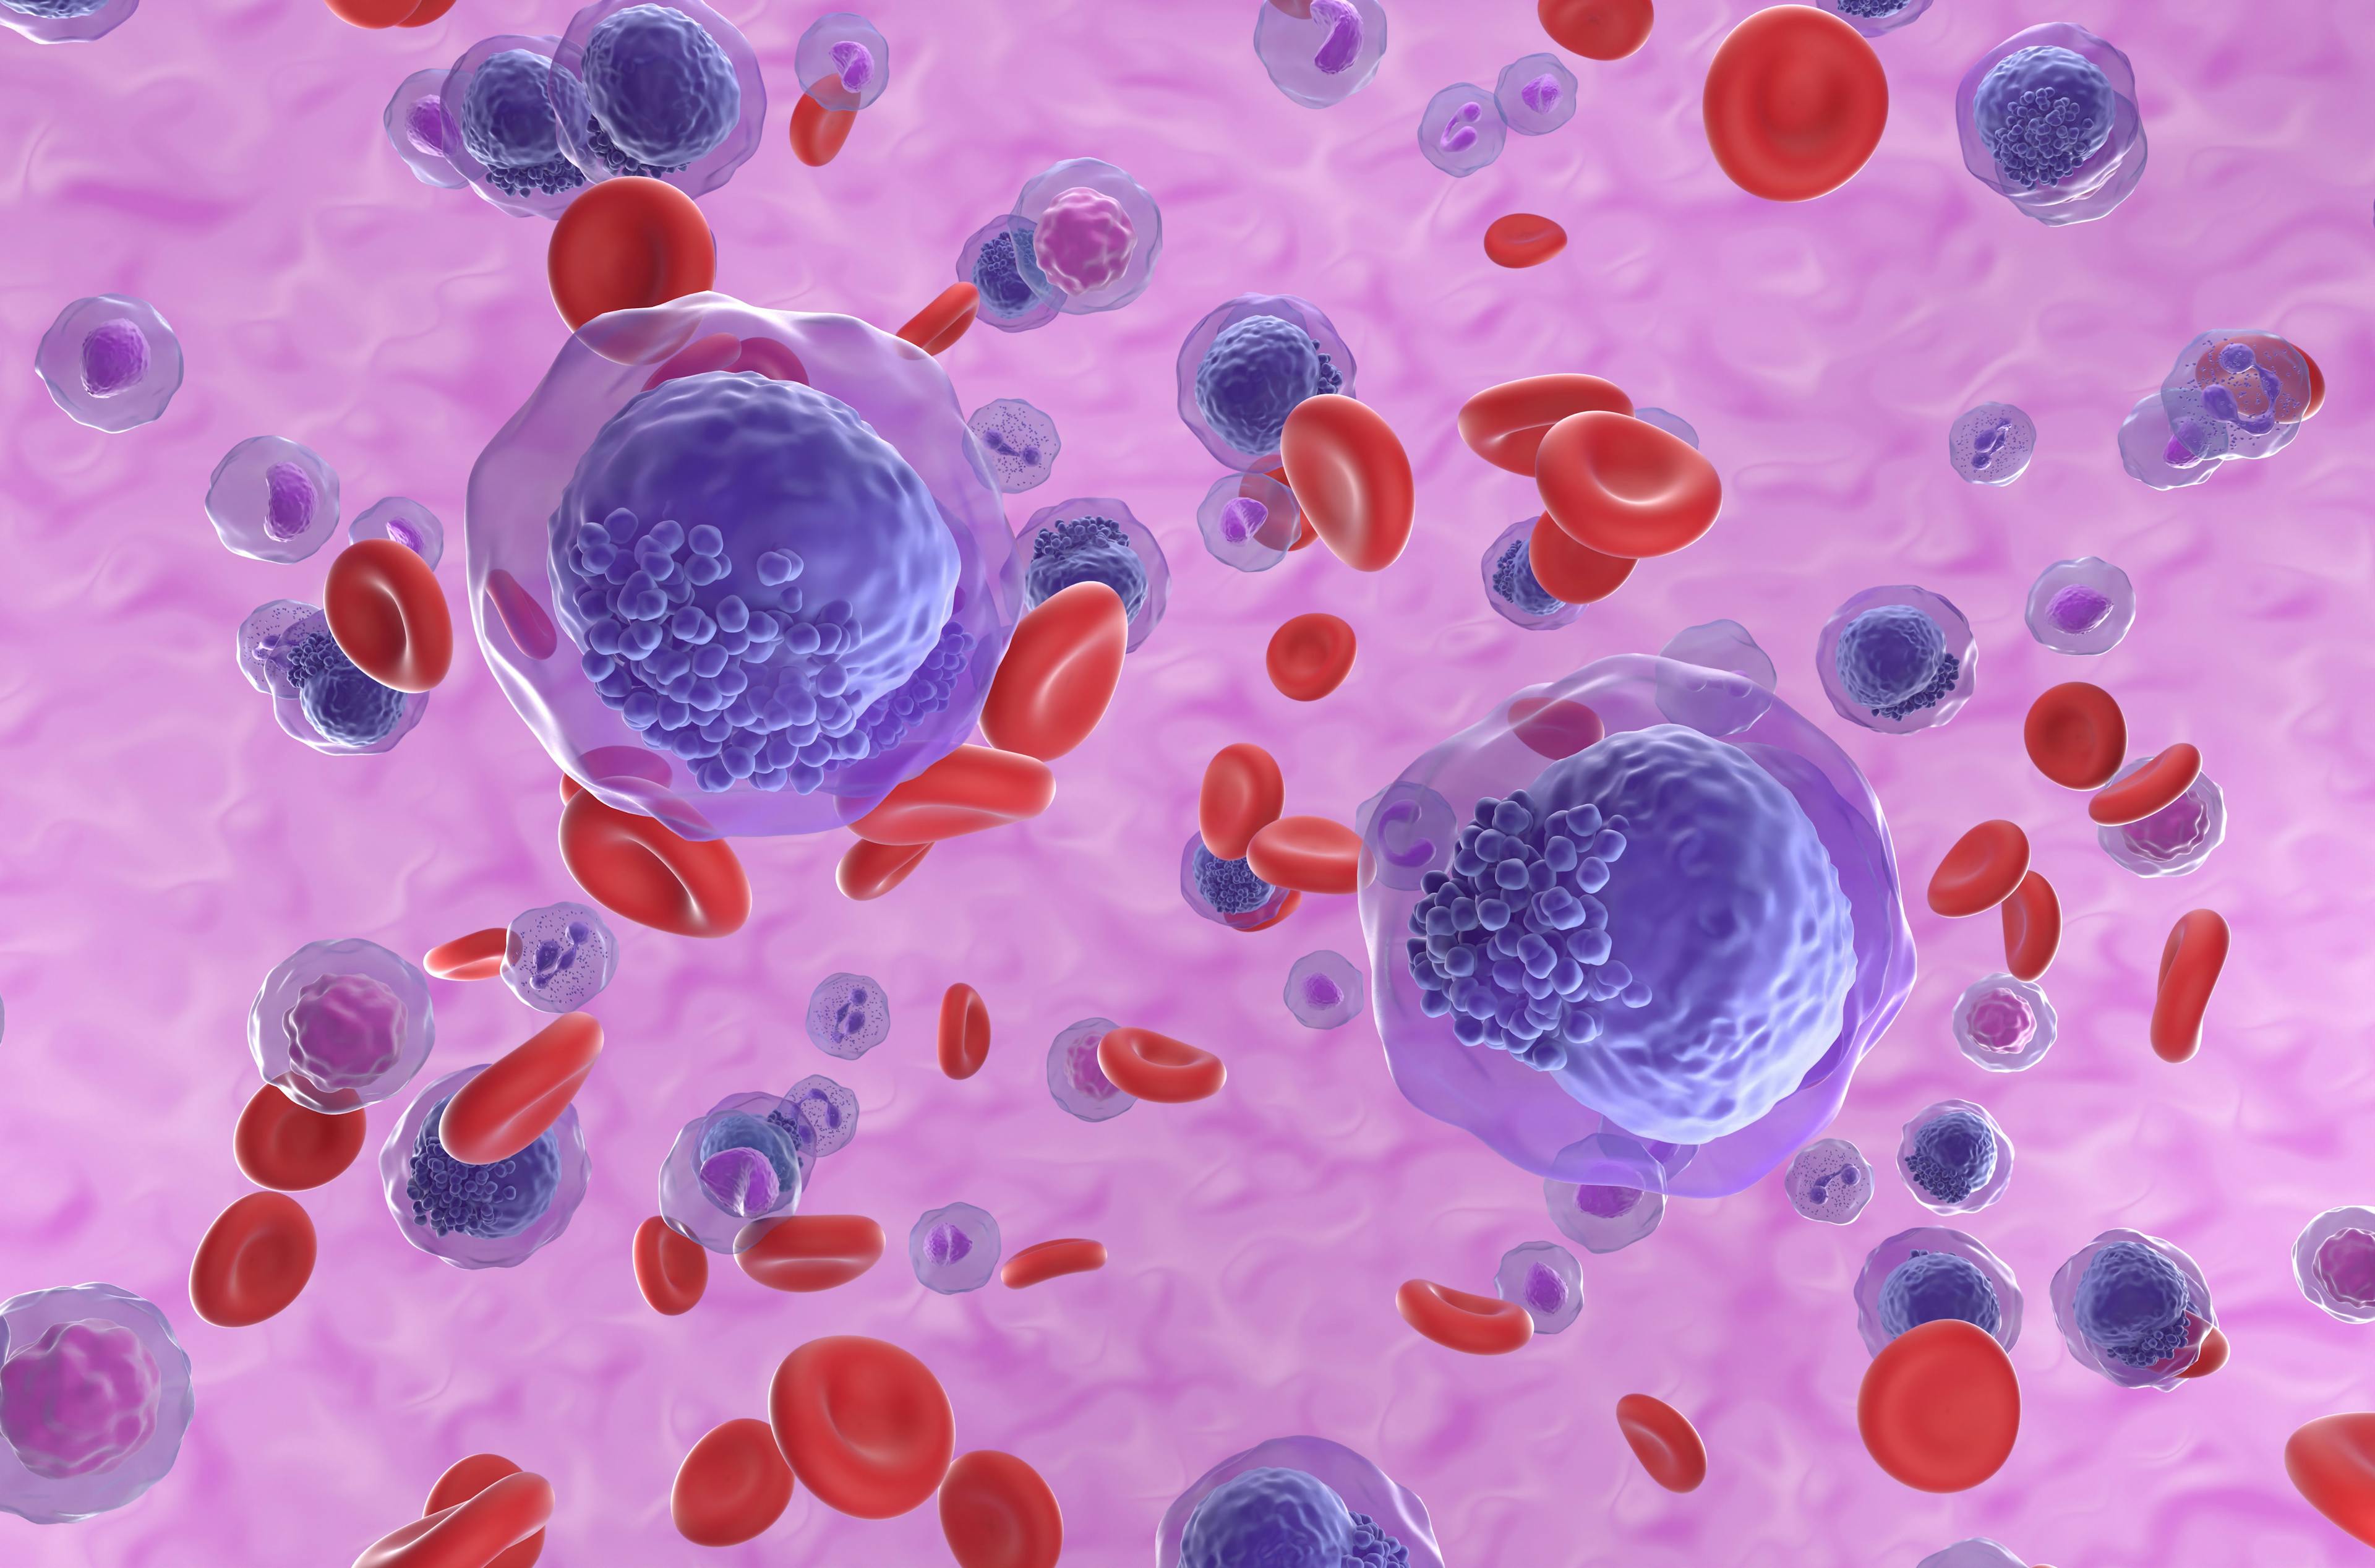 3D illustration of AML cells: © LASZLO - stock.adobe.com